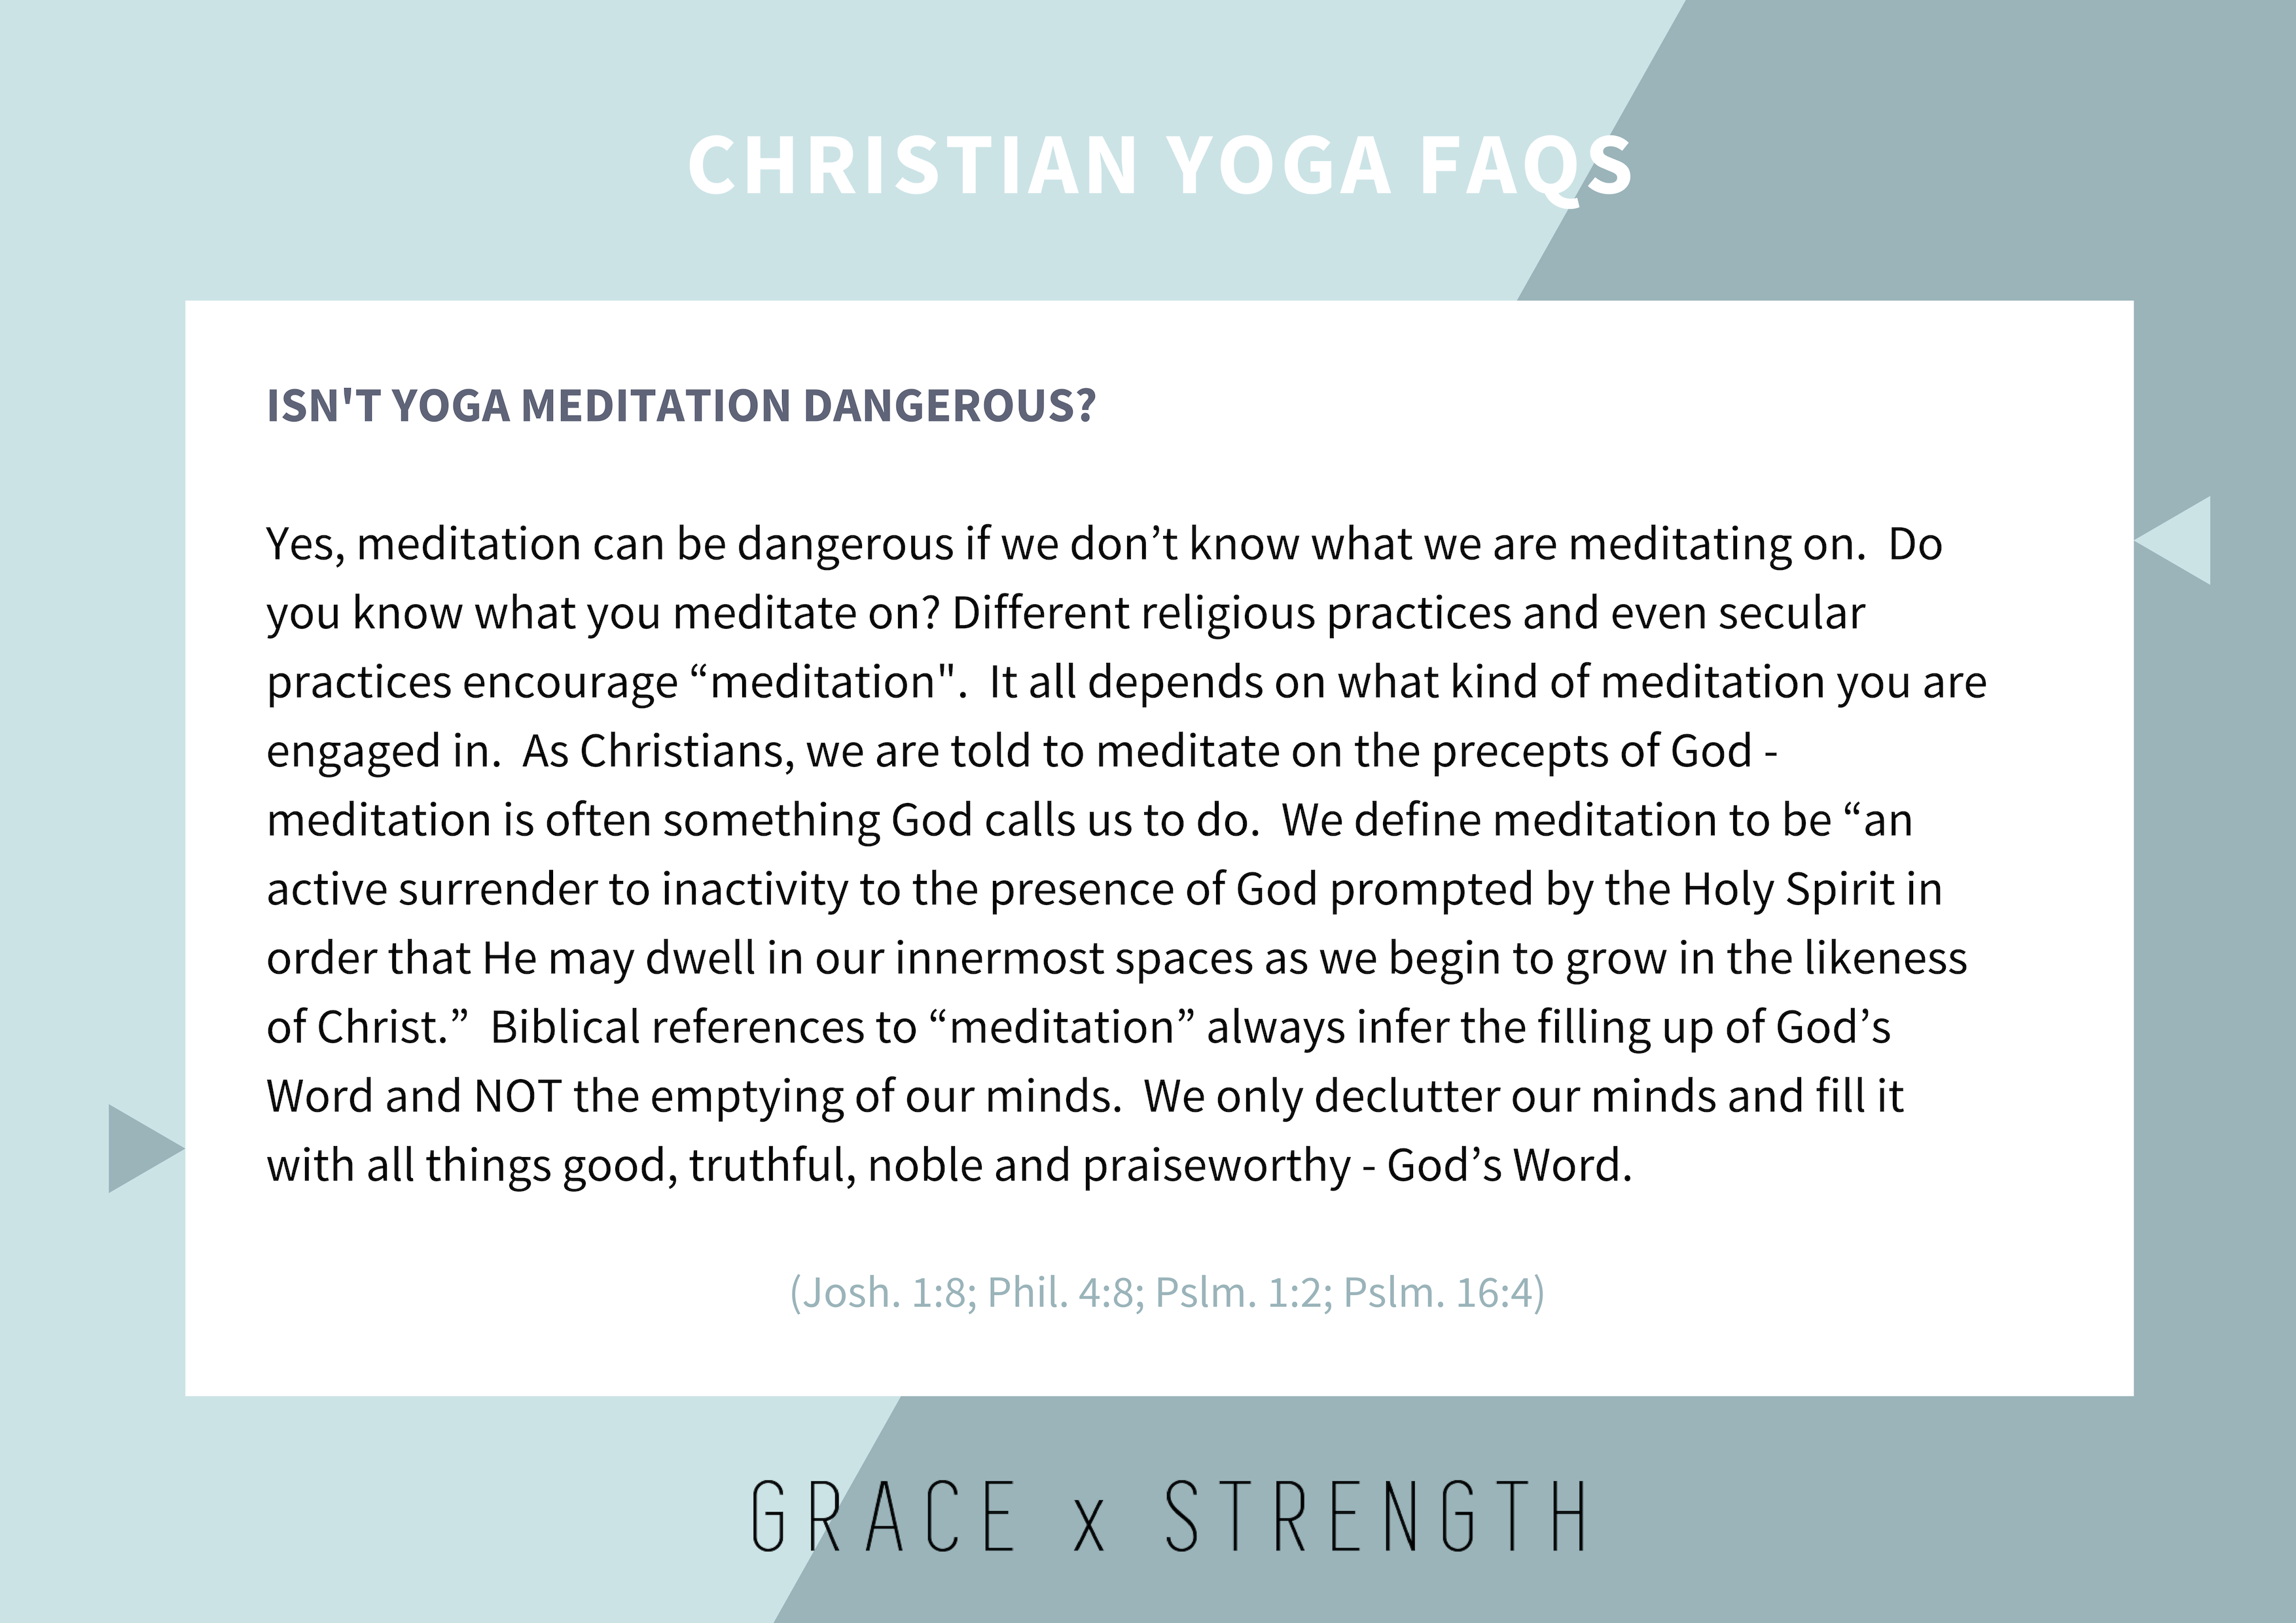 Isn’t yoga meditation dangerous?